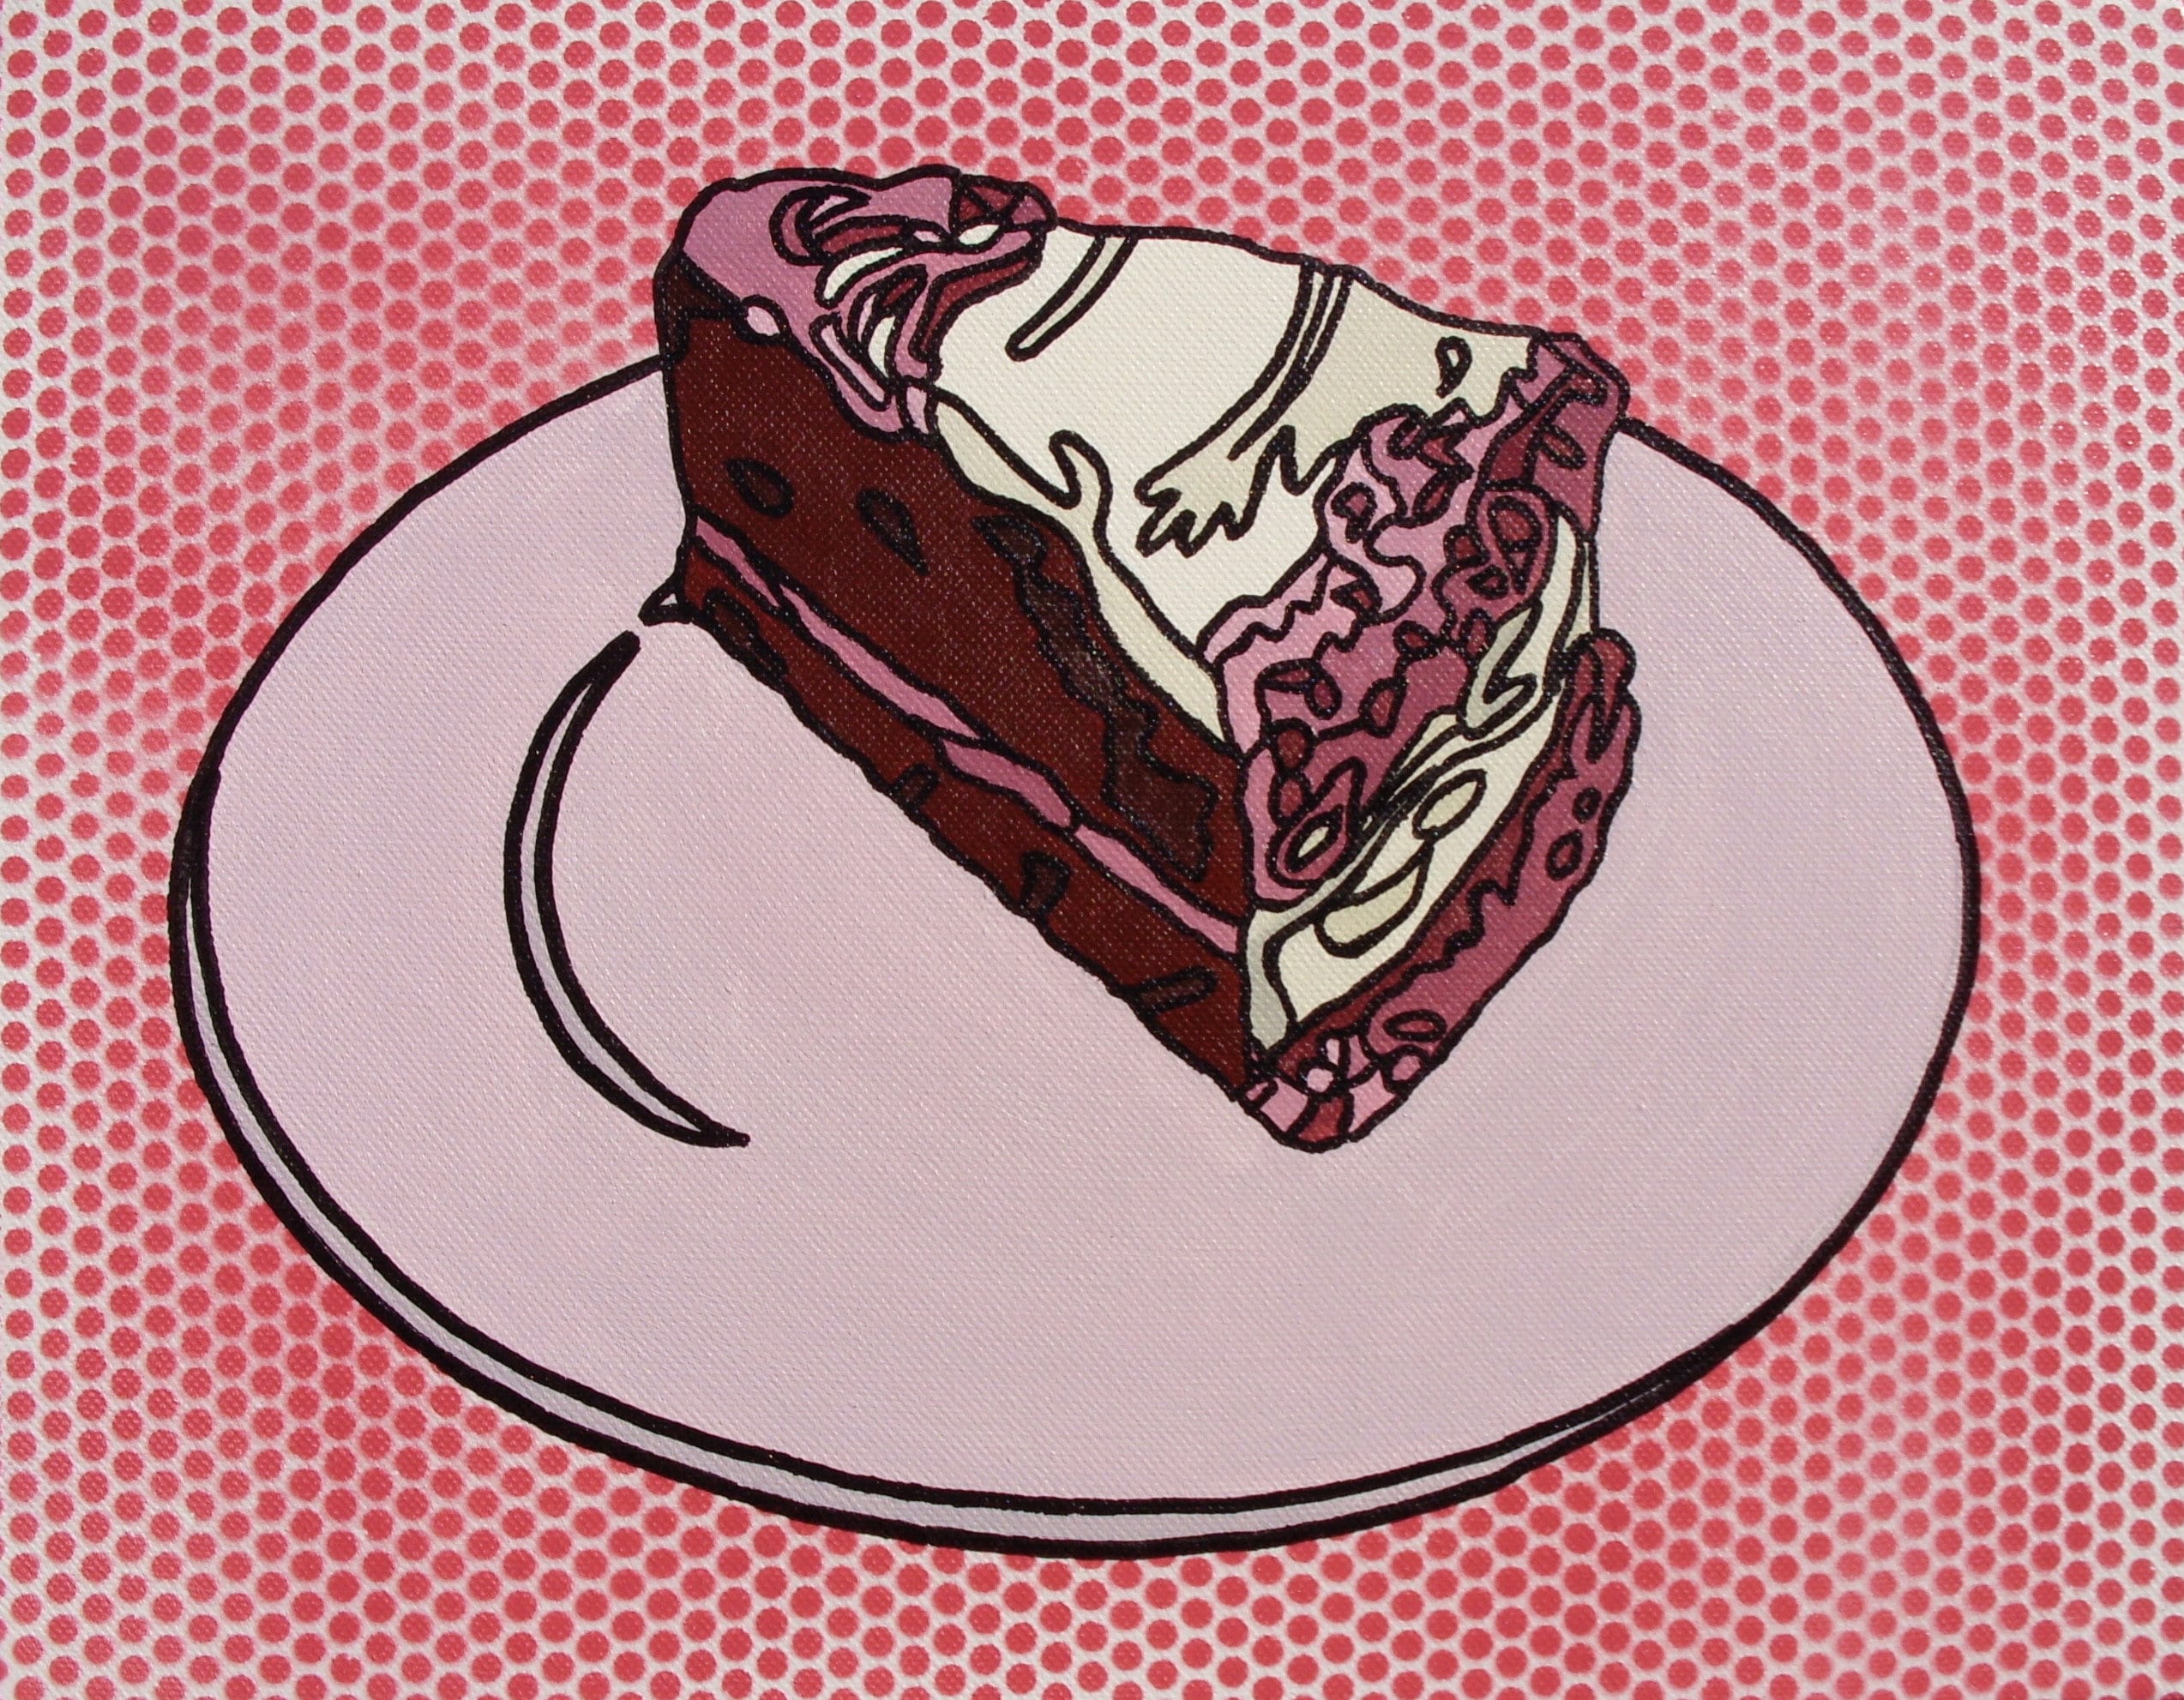 Pop Art Red Velvet Cake Painting photo